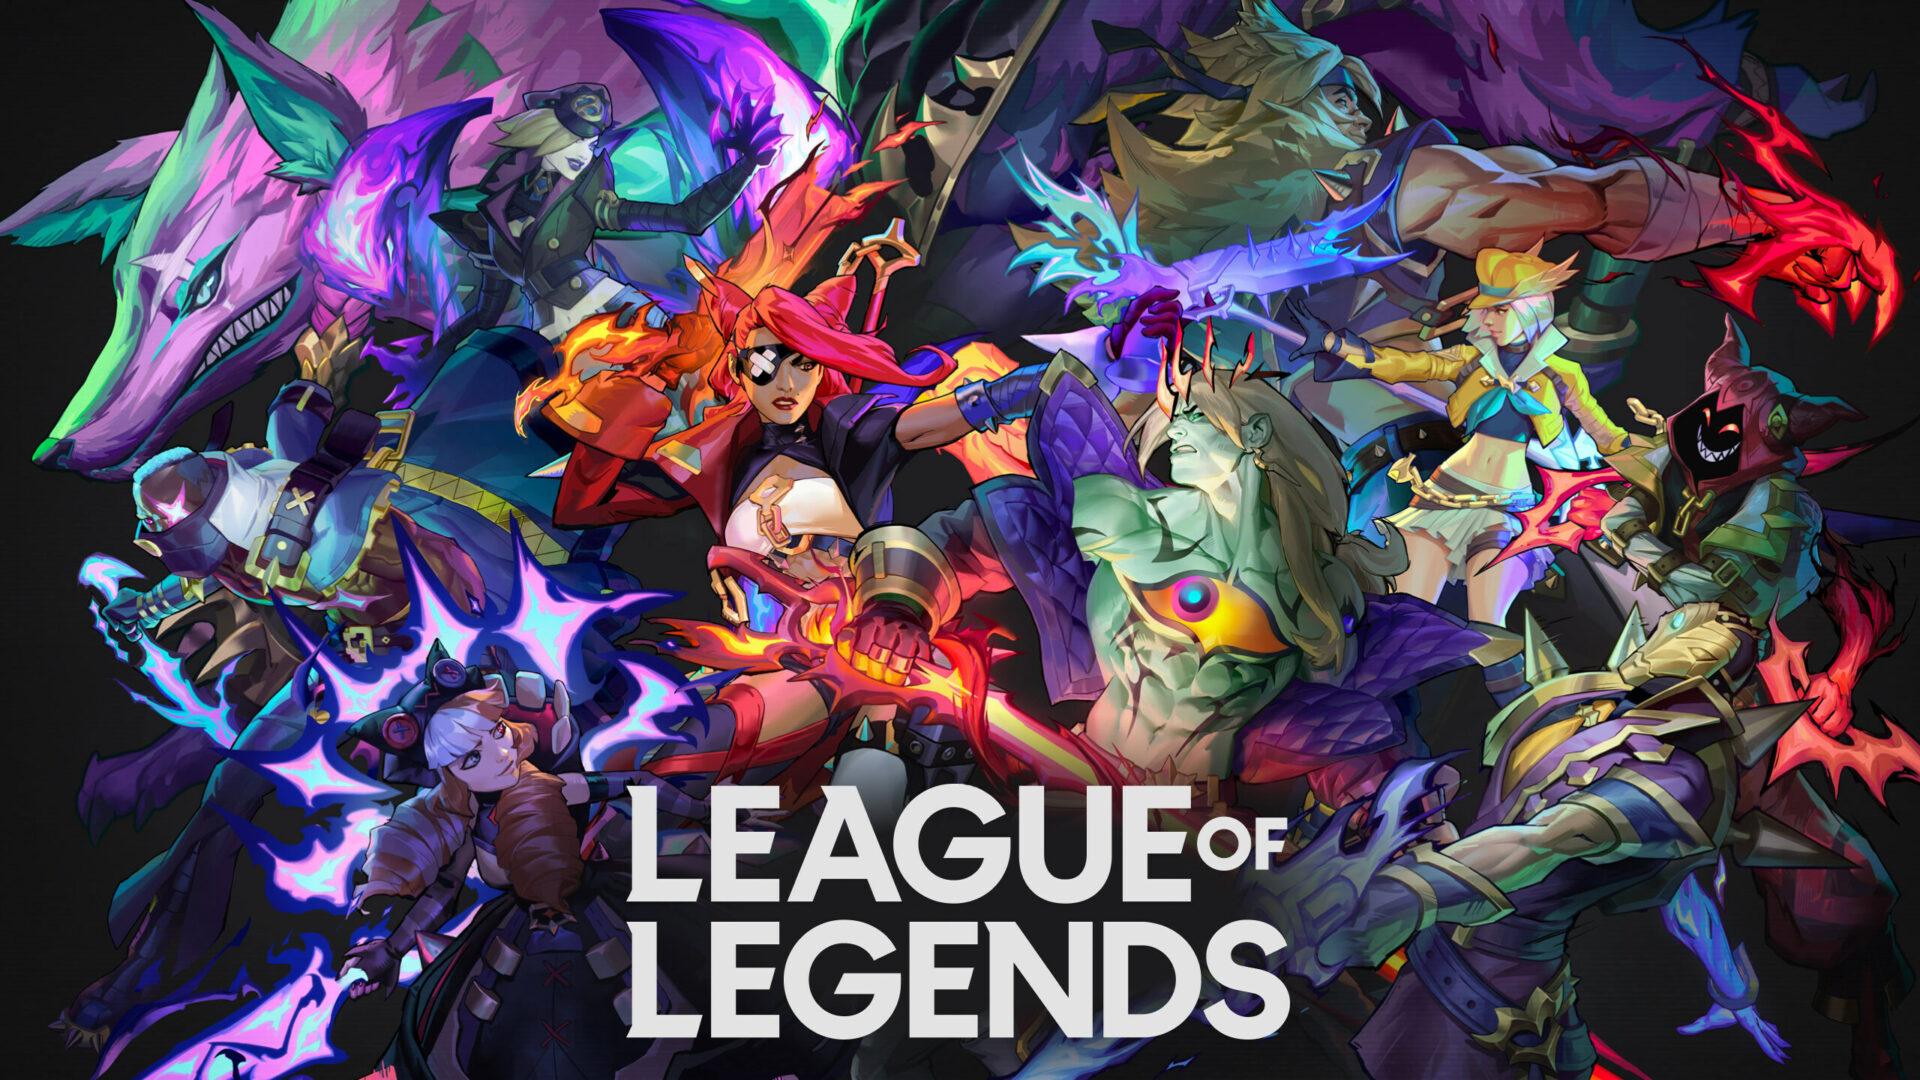 League of Legends Cover Art